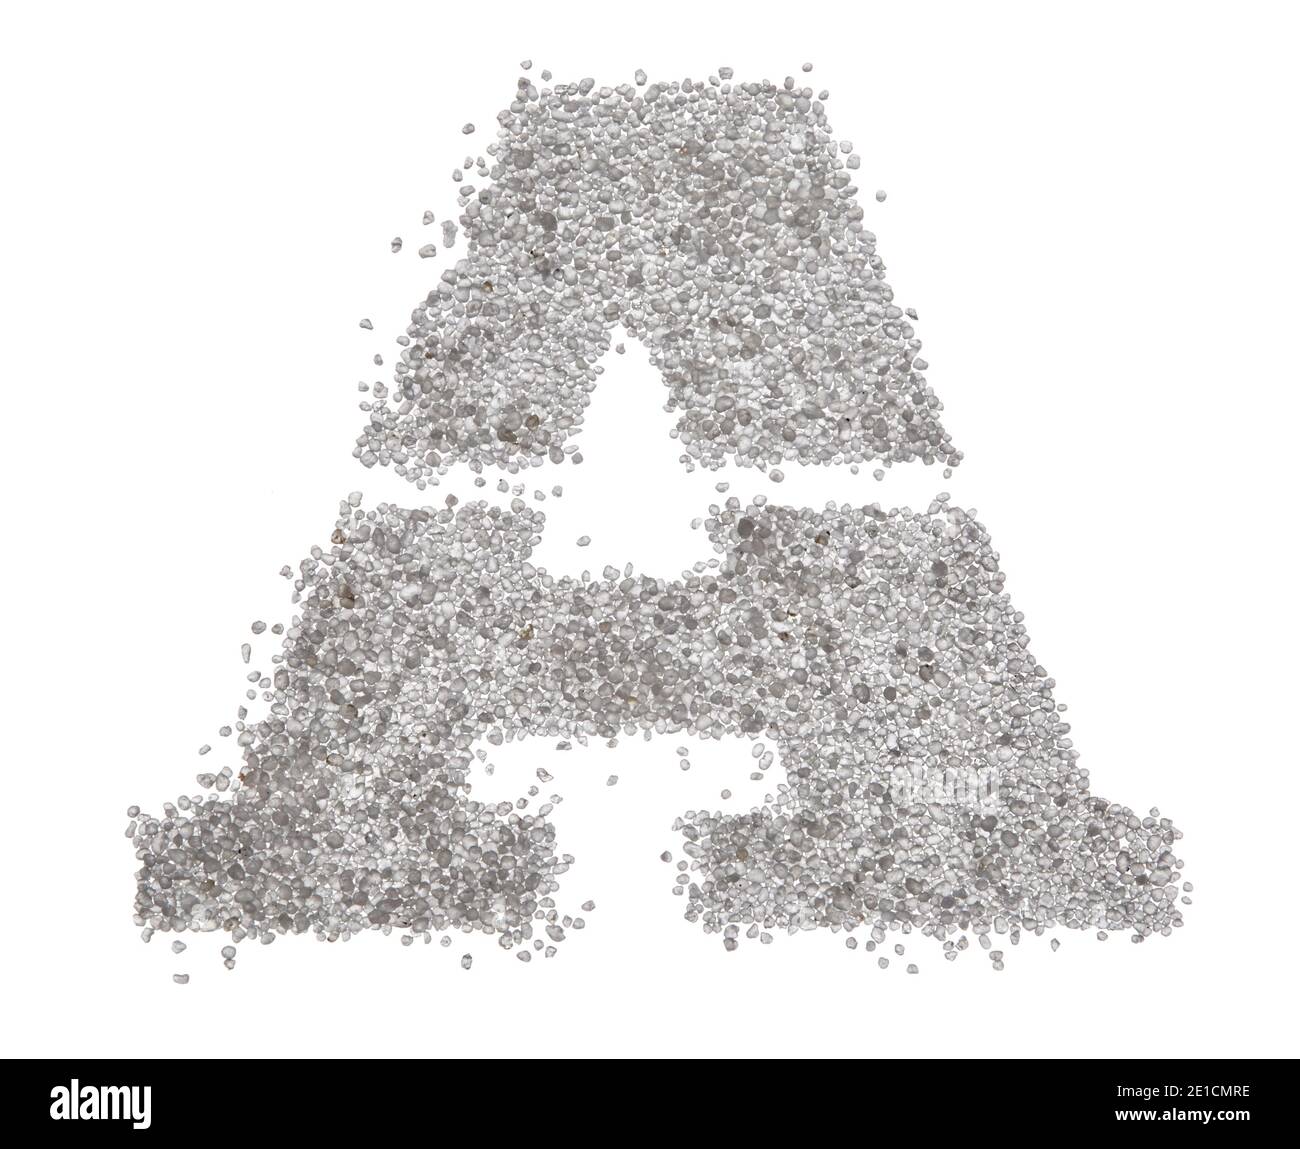 Serif sable lettre majuscule A avec bords tranchants photographiés dessus un arrière-plan blanc Banque D'Images